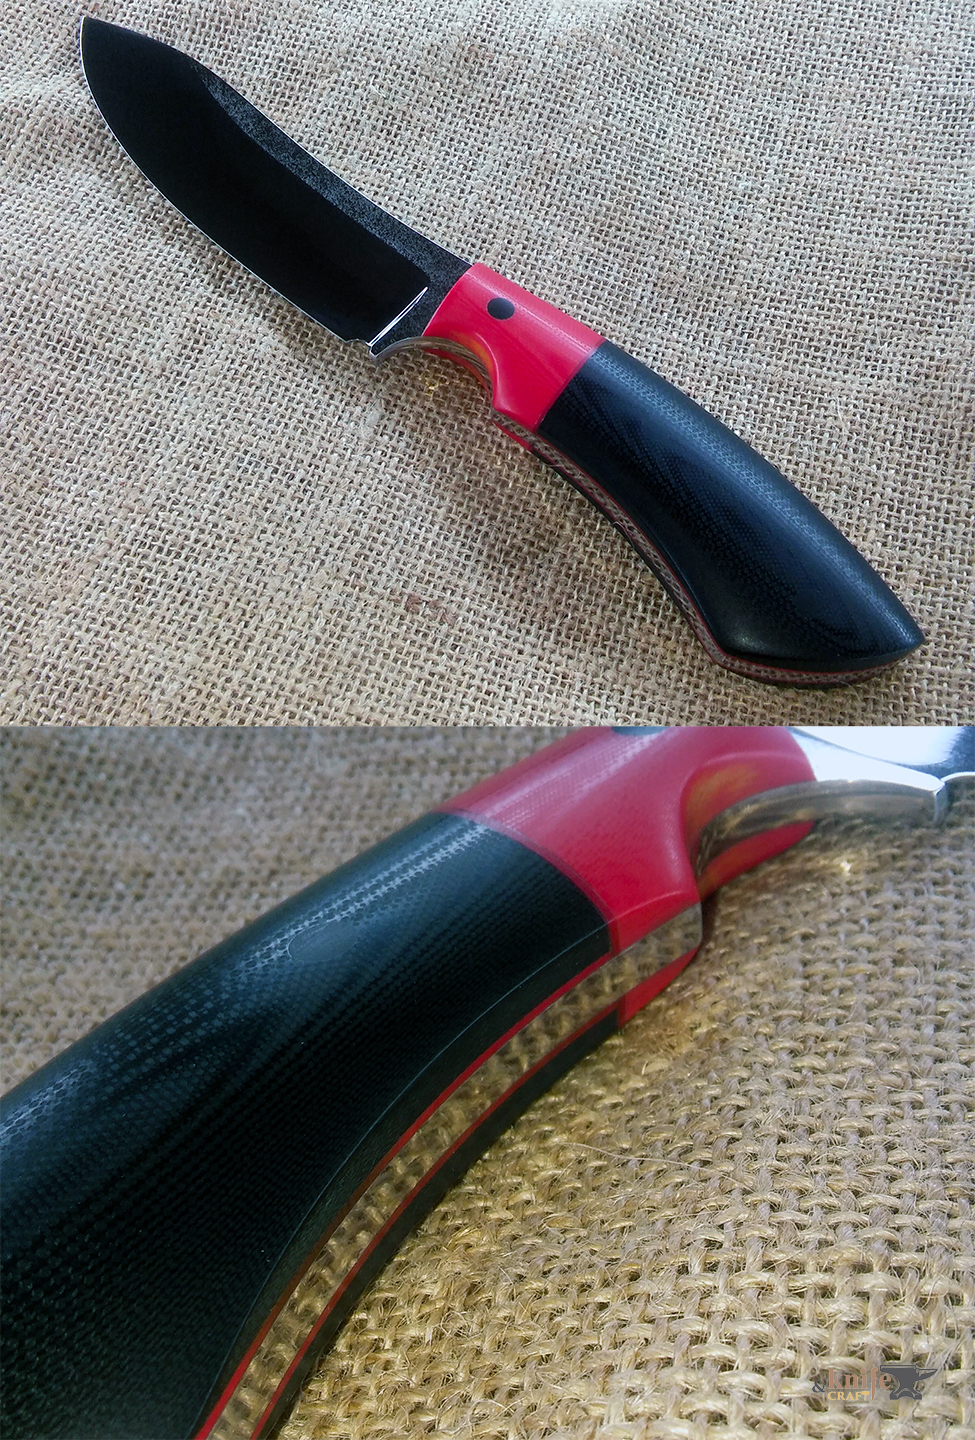 кривой нож малый шкурный разделочный с черно-красной рукоятой, лезвие из порошковой К390 Bohler-Uddeholm спуски вогнутая линза ручной работы в Тамбове 